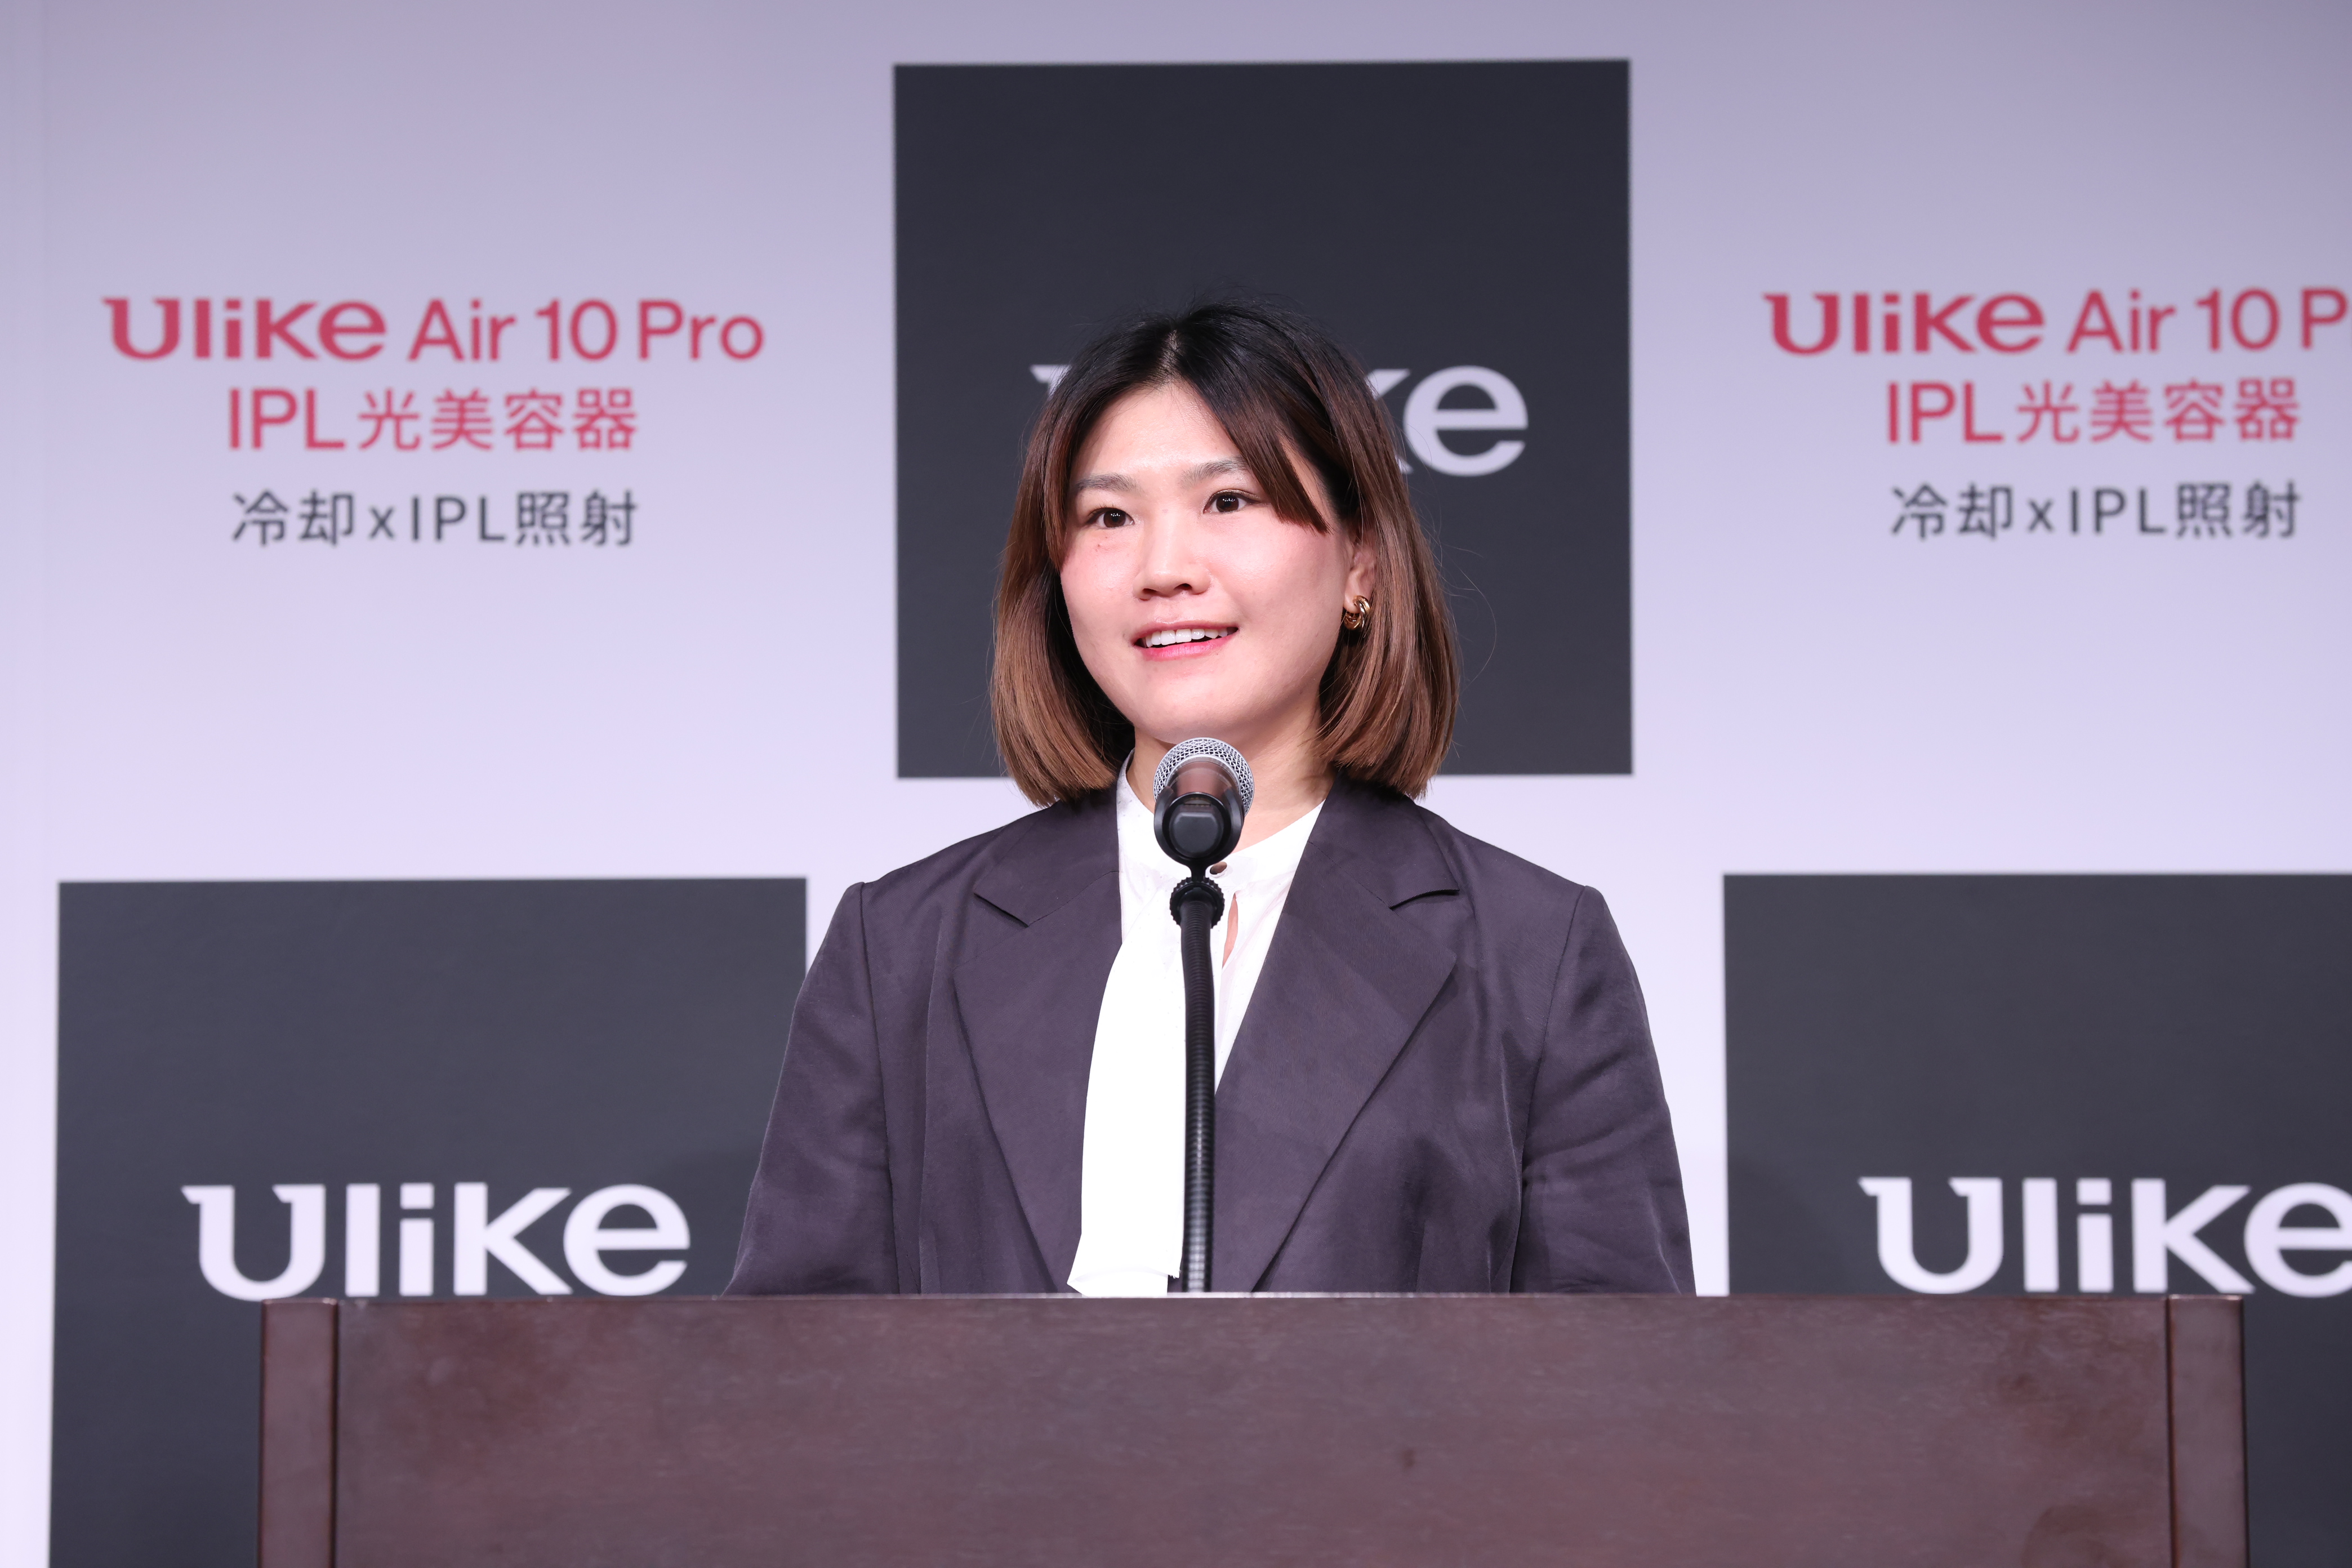 【イベントレポート】山本舞香さんがなりたいのは「愛犬にとってのNO.1」 ⁉「Ulike 新製品発表会」開催のサブ画像4